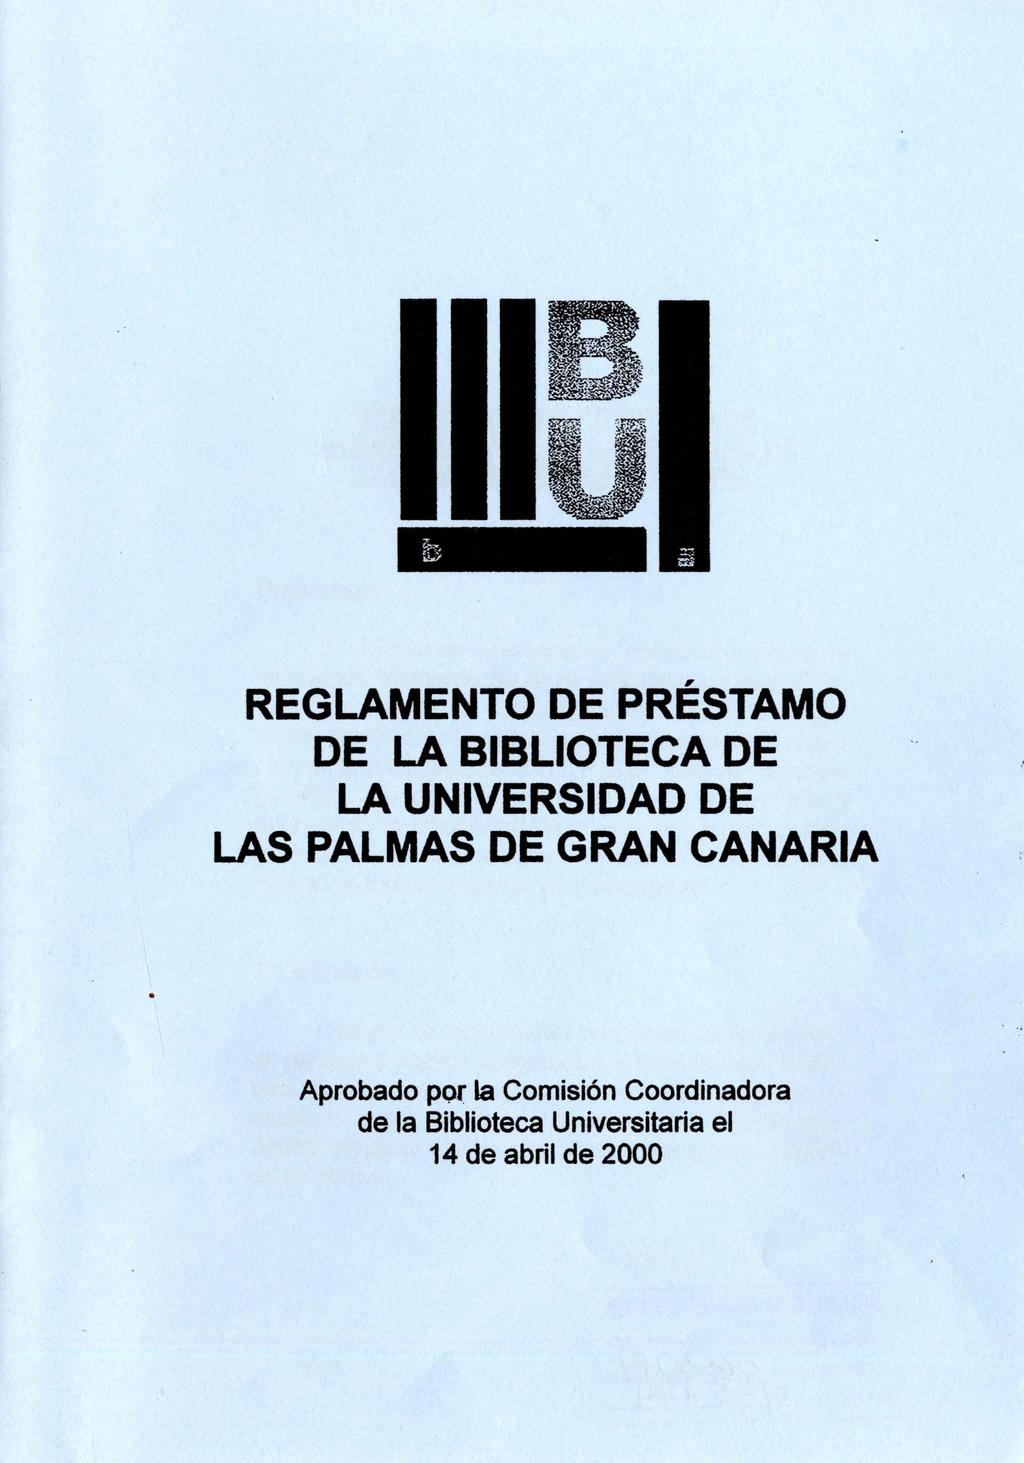 REGLAMENTO DE PRÉSTAMO DE LA BIBLIOTECA DE LA UNIVERSIDAD DE LAS PALMAS DE GRAN CANARIA